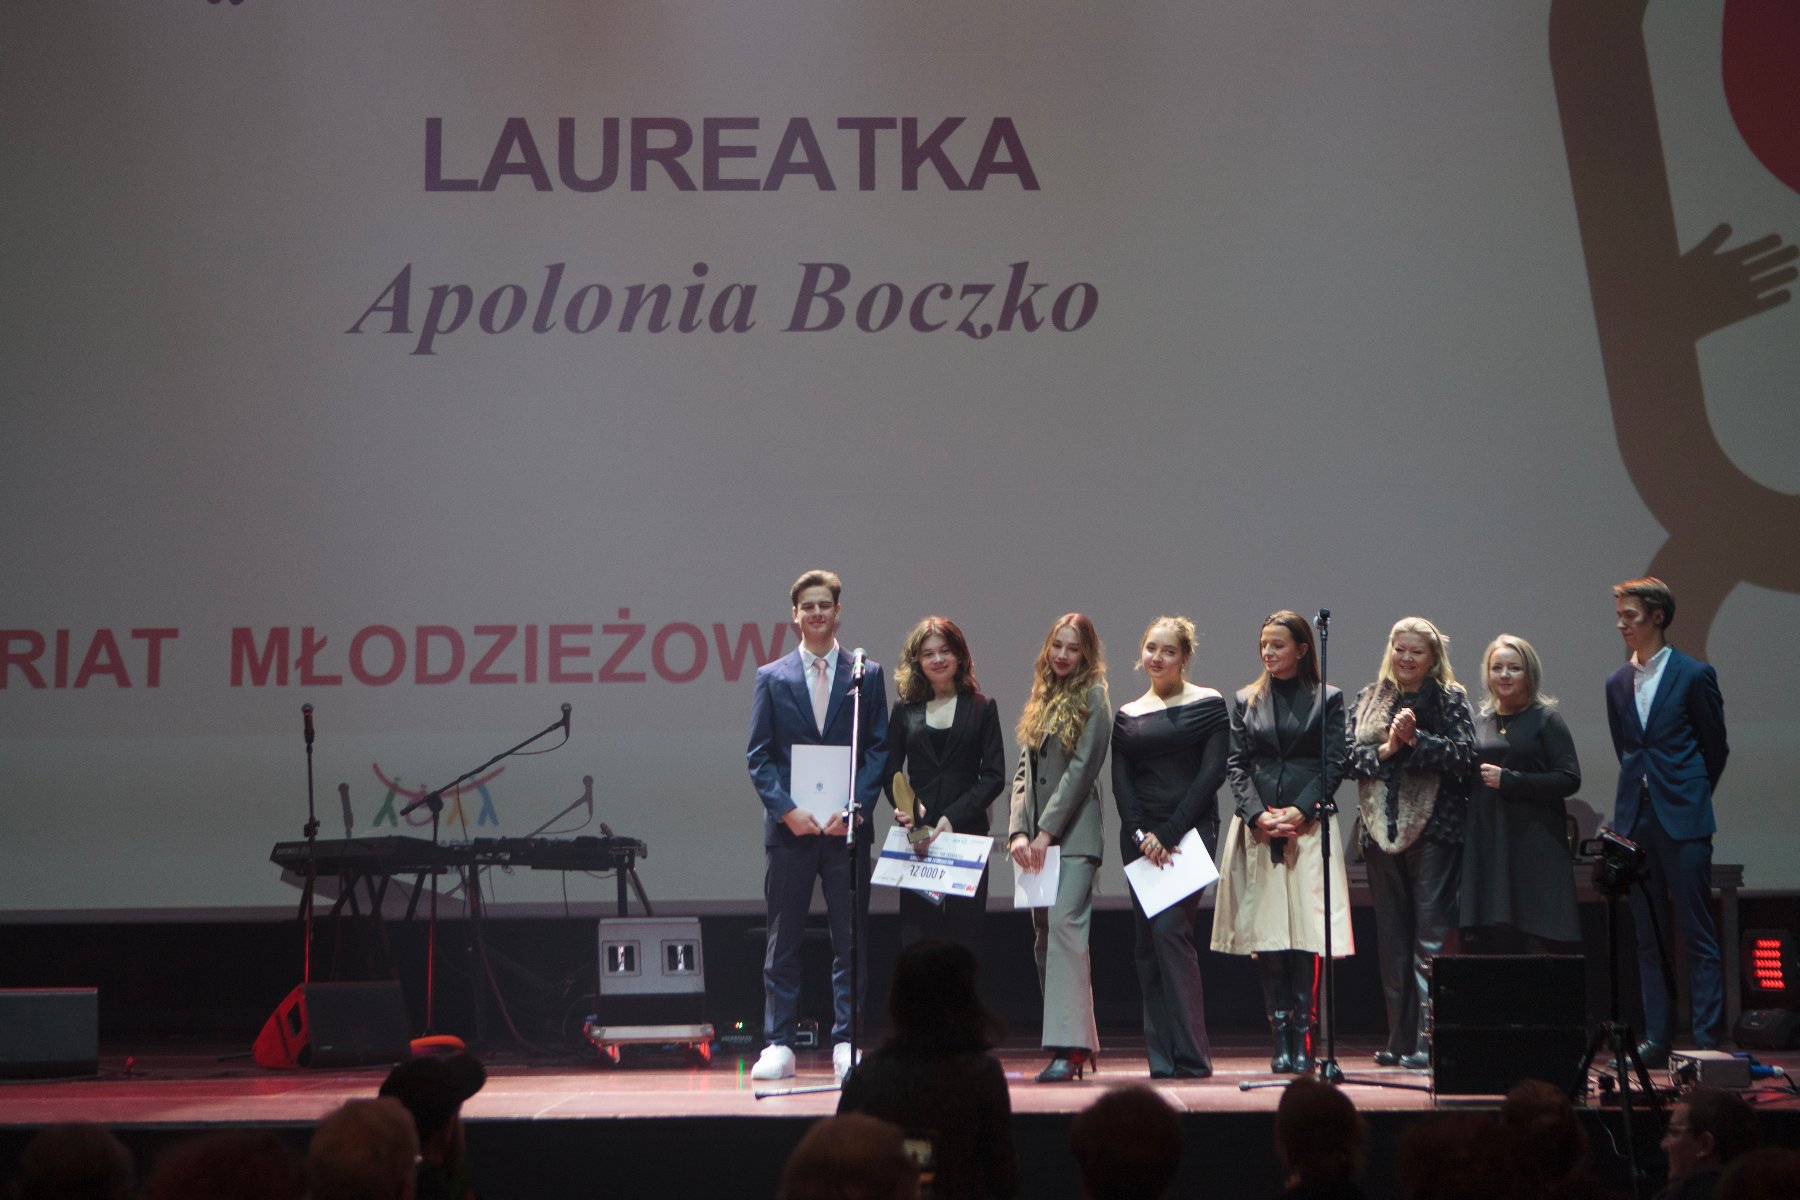 Na zdjęciu znajduje się grupa osób stojąca na scenie podczas gali konkursu.